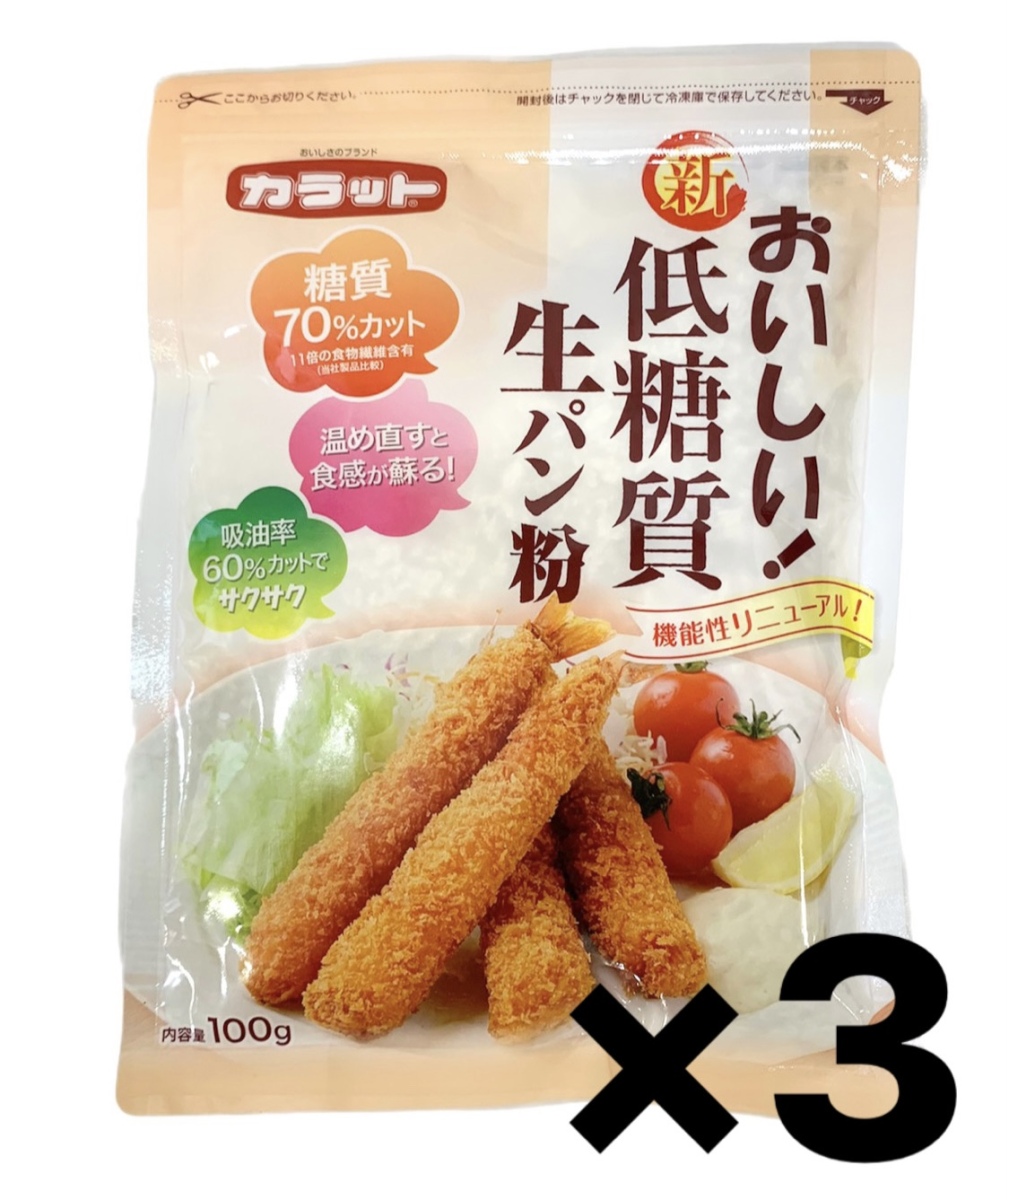 大川食品工業 カラット おいしい低糖質 生パン粉 100g×3袋の商品画像